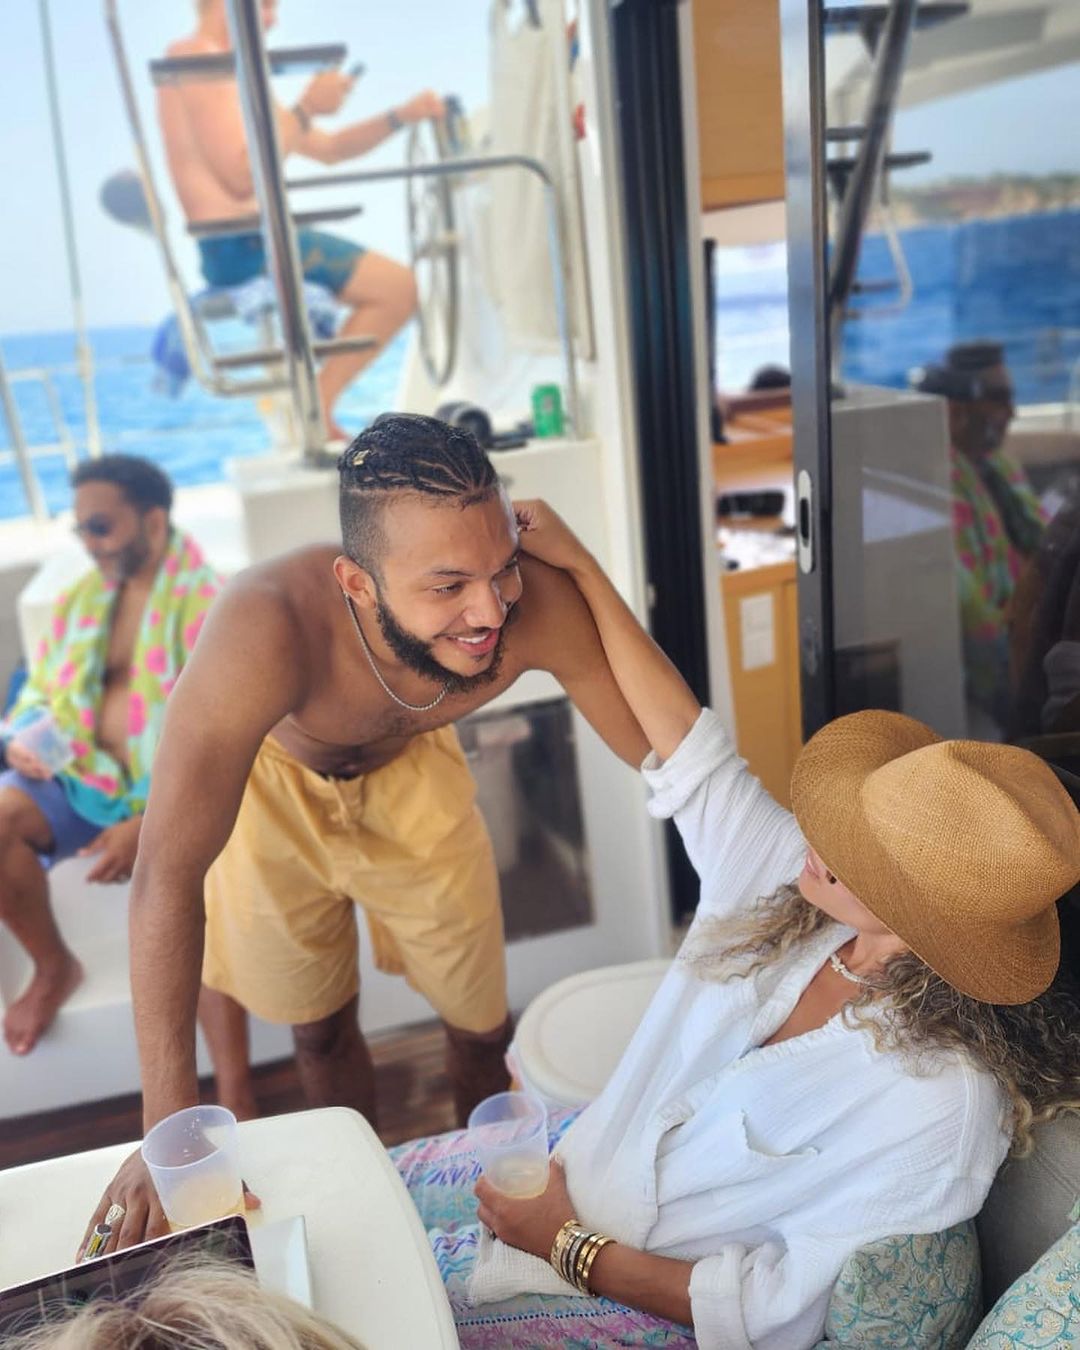 Sunny Hostin Vacations in Ibiza With Family: Photos